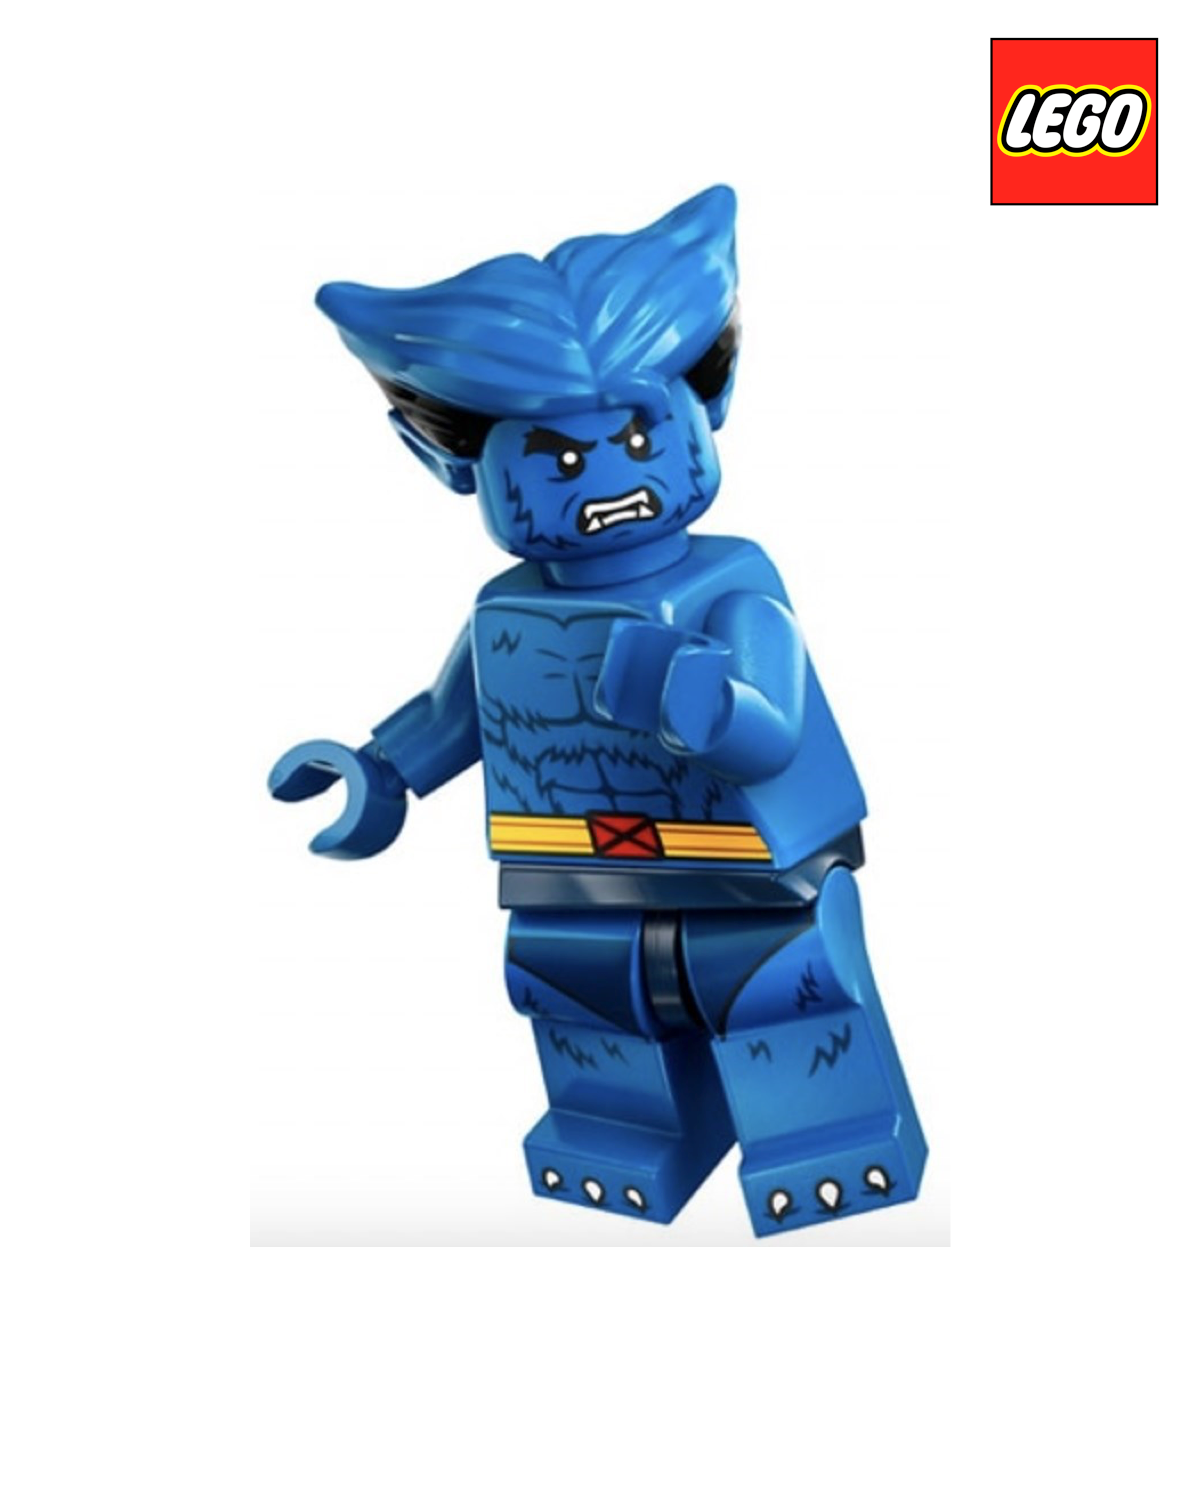 Beast - Marvel Studios - Series 2  | LEGO Minifigure | NEW CMF